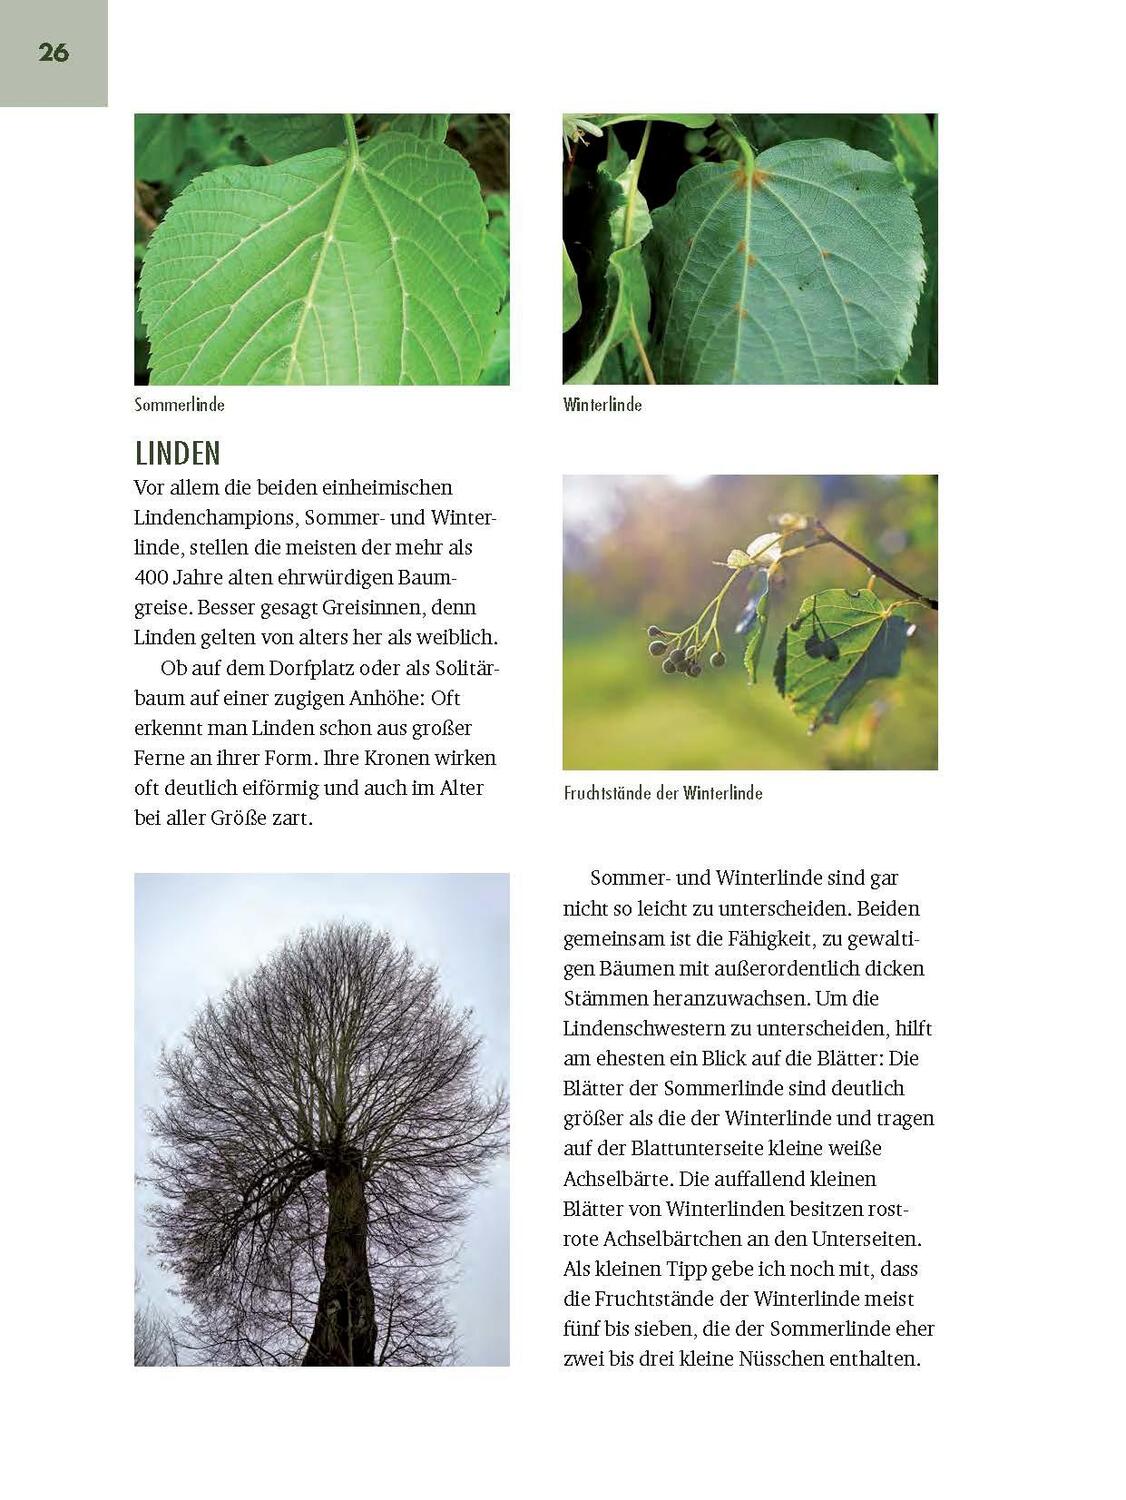 Bild: 9783892515418 | Faszinierende Bäume in Oberbayern | Jürgen Schuller | Buch | 208 S.